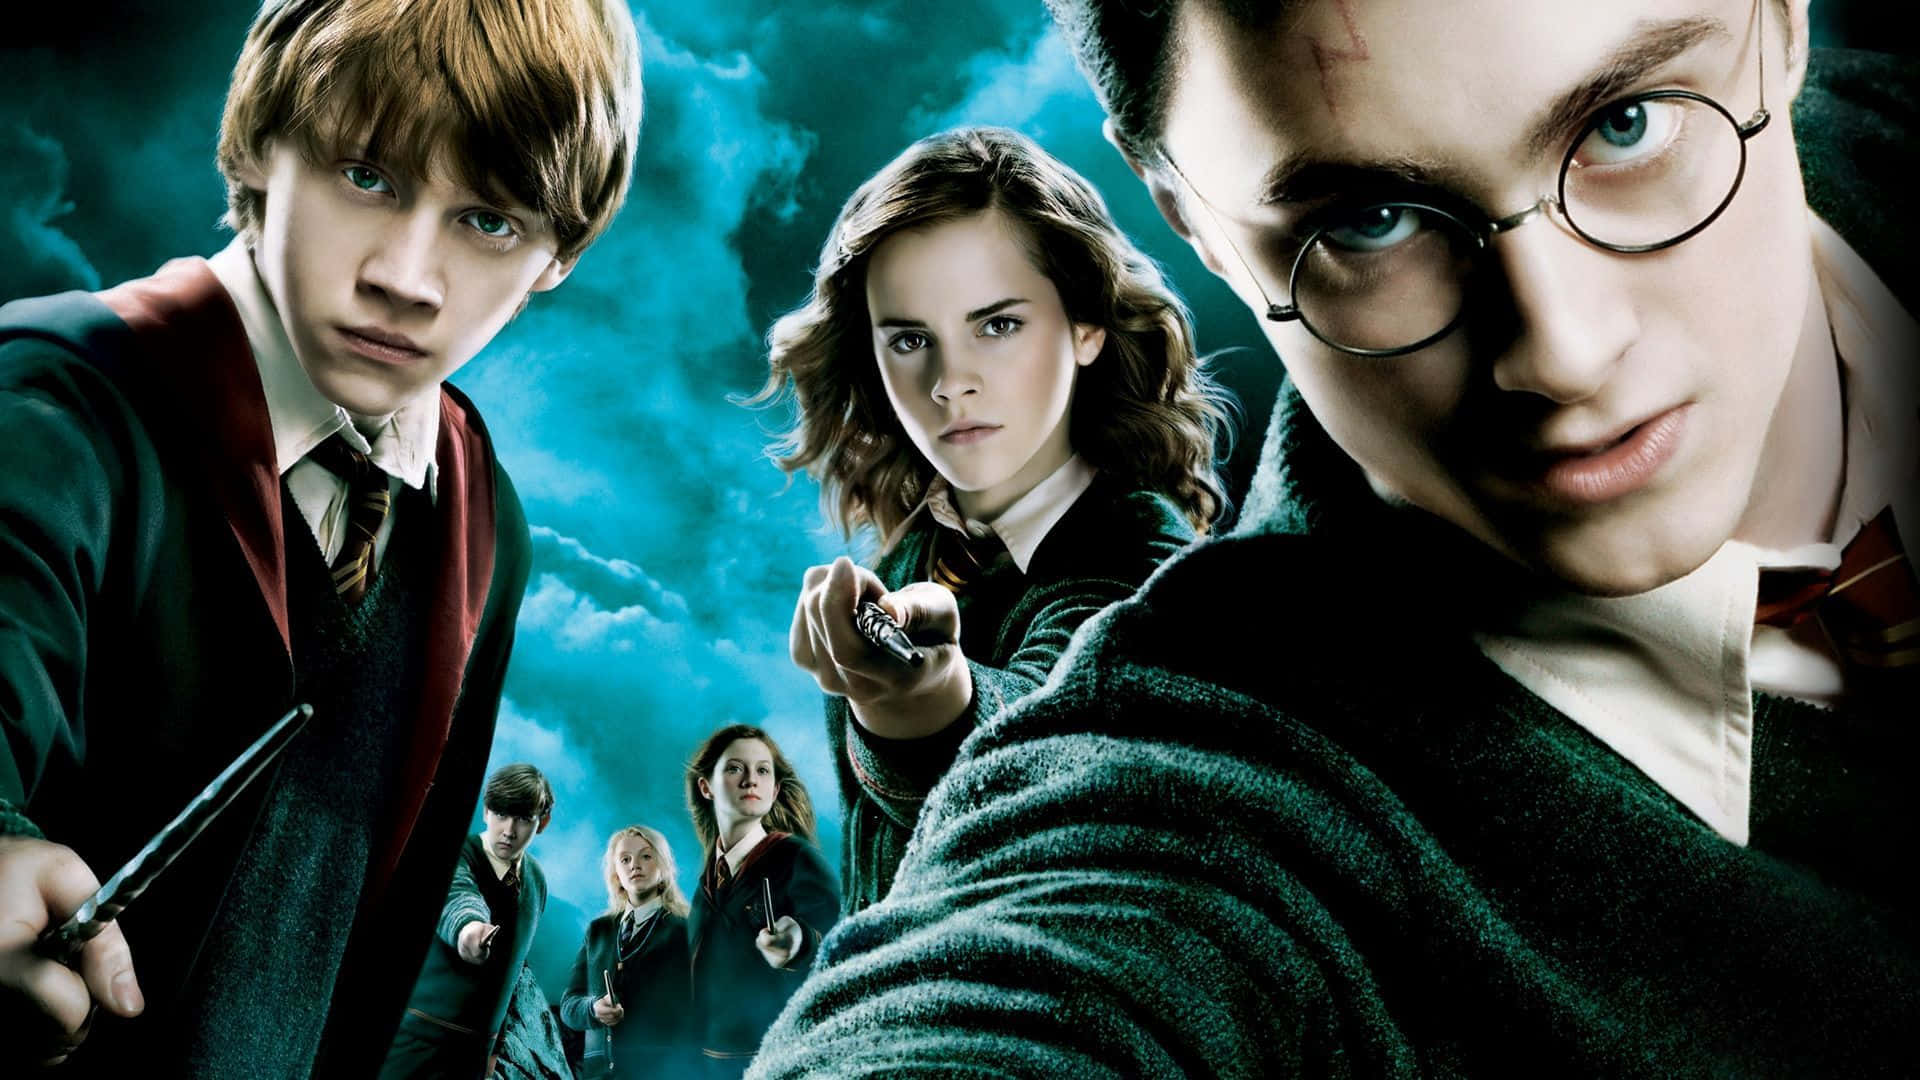 Harry,ron Und Hermione - Das Goldene Trio Wallpaper